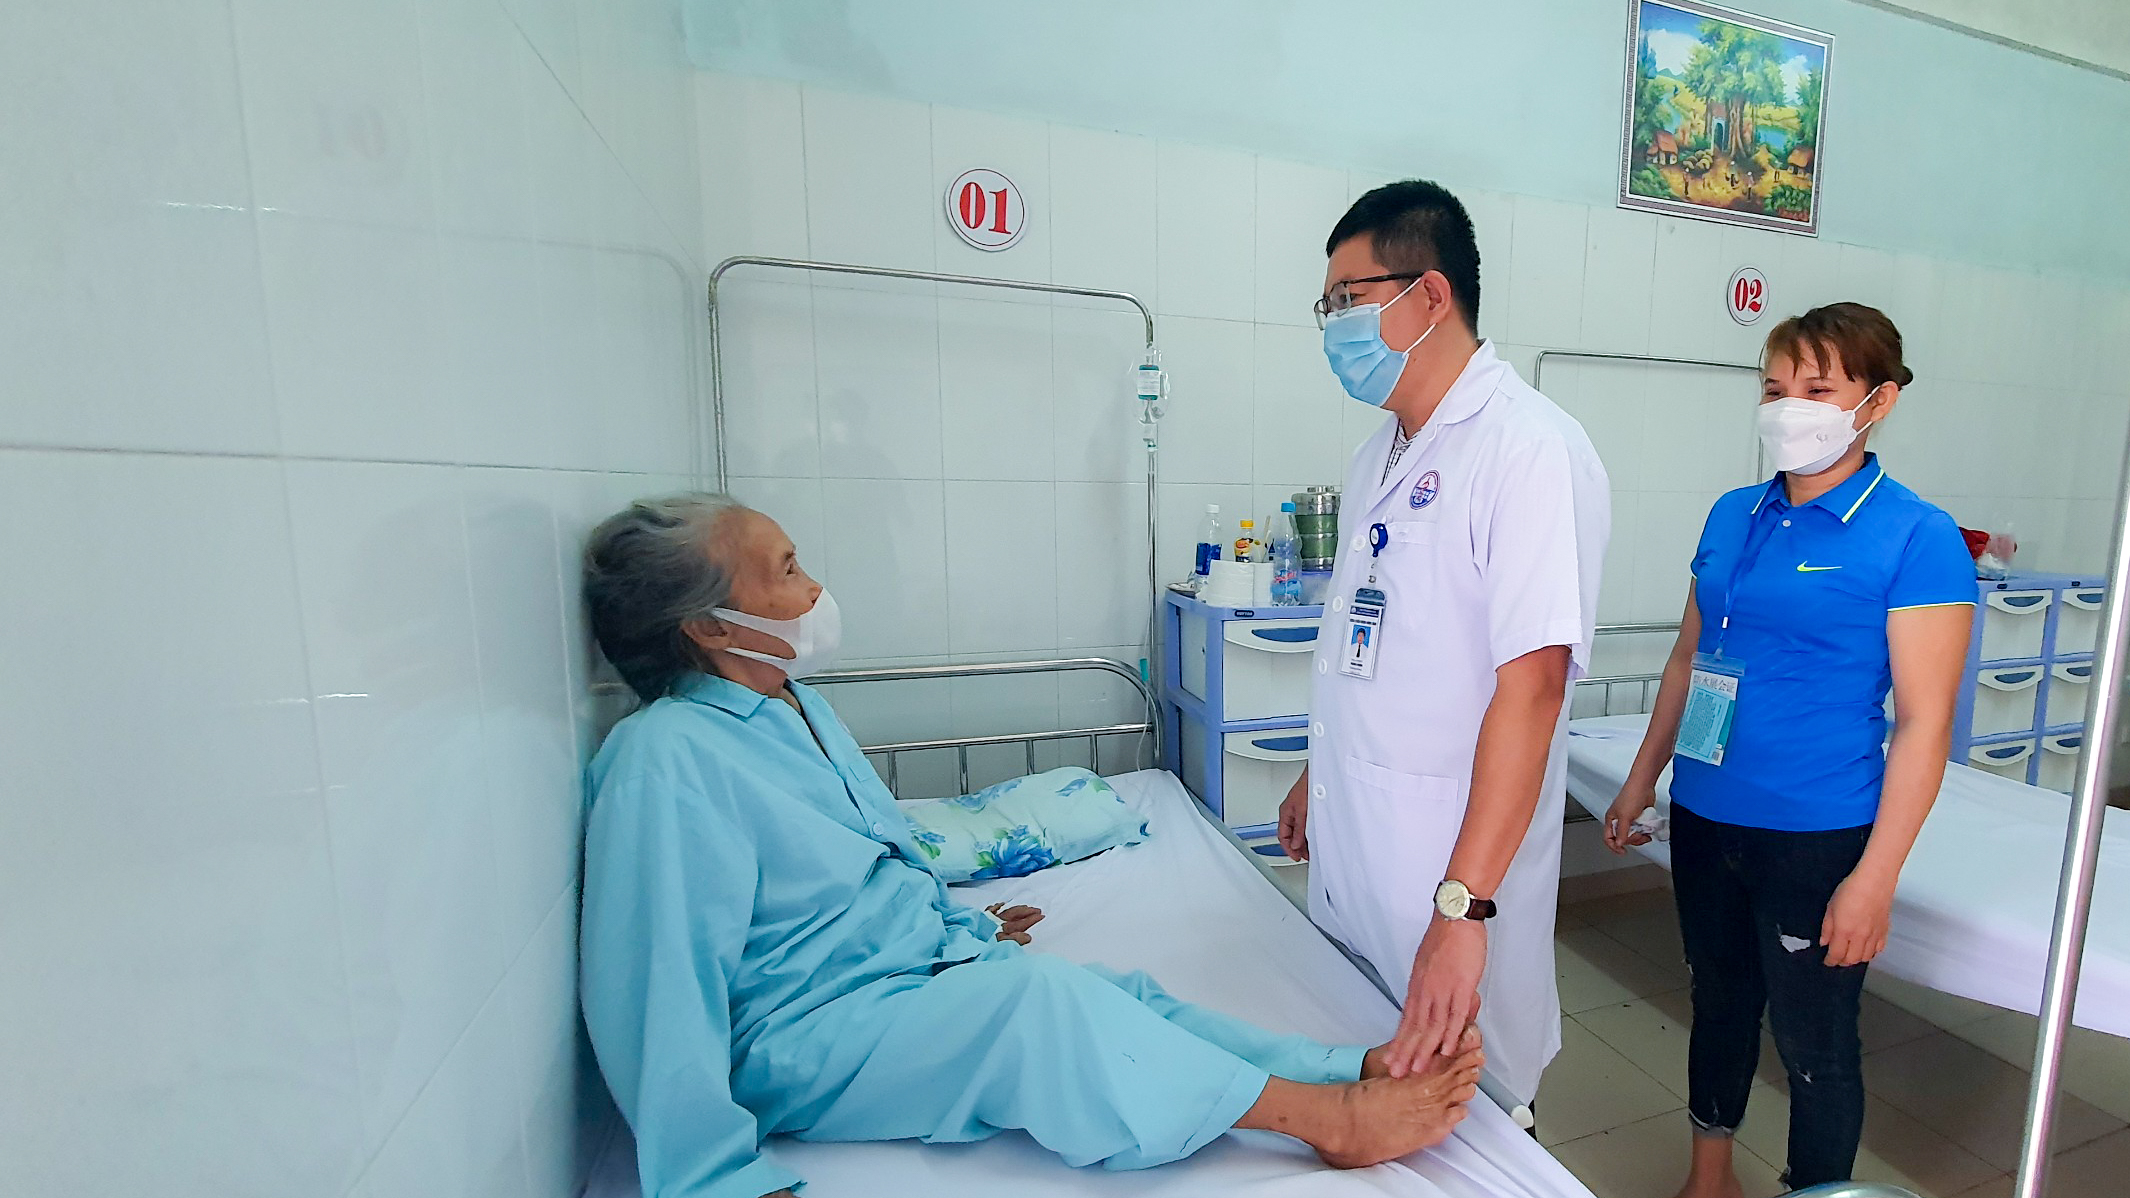 Bệnh nhân Phan Thị Xuyến có thể tự ngồi dậy và đi lại sau hơn 30 phút được thực hiện thủ thuật 'đổ xi măng' sinh học điều trị tổn thương đốt sống - Ảnh: Lê Trường